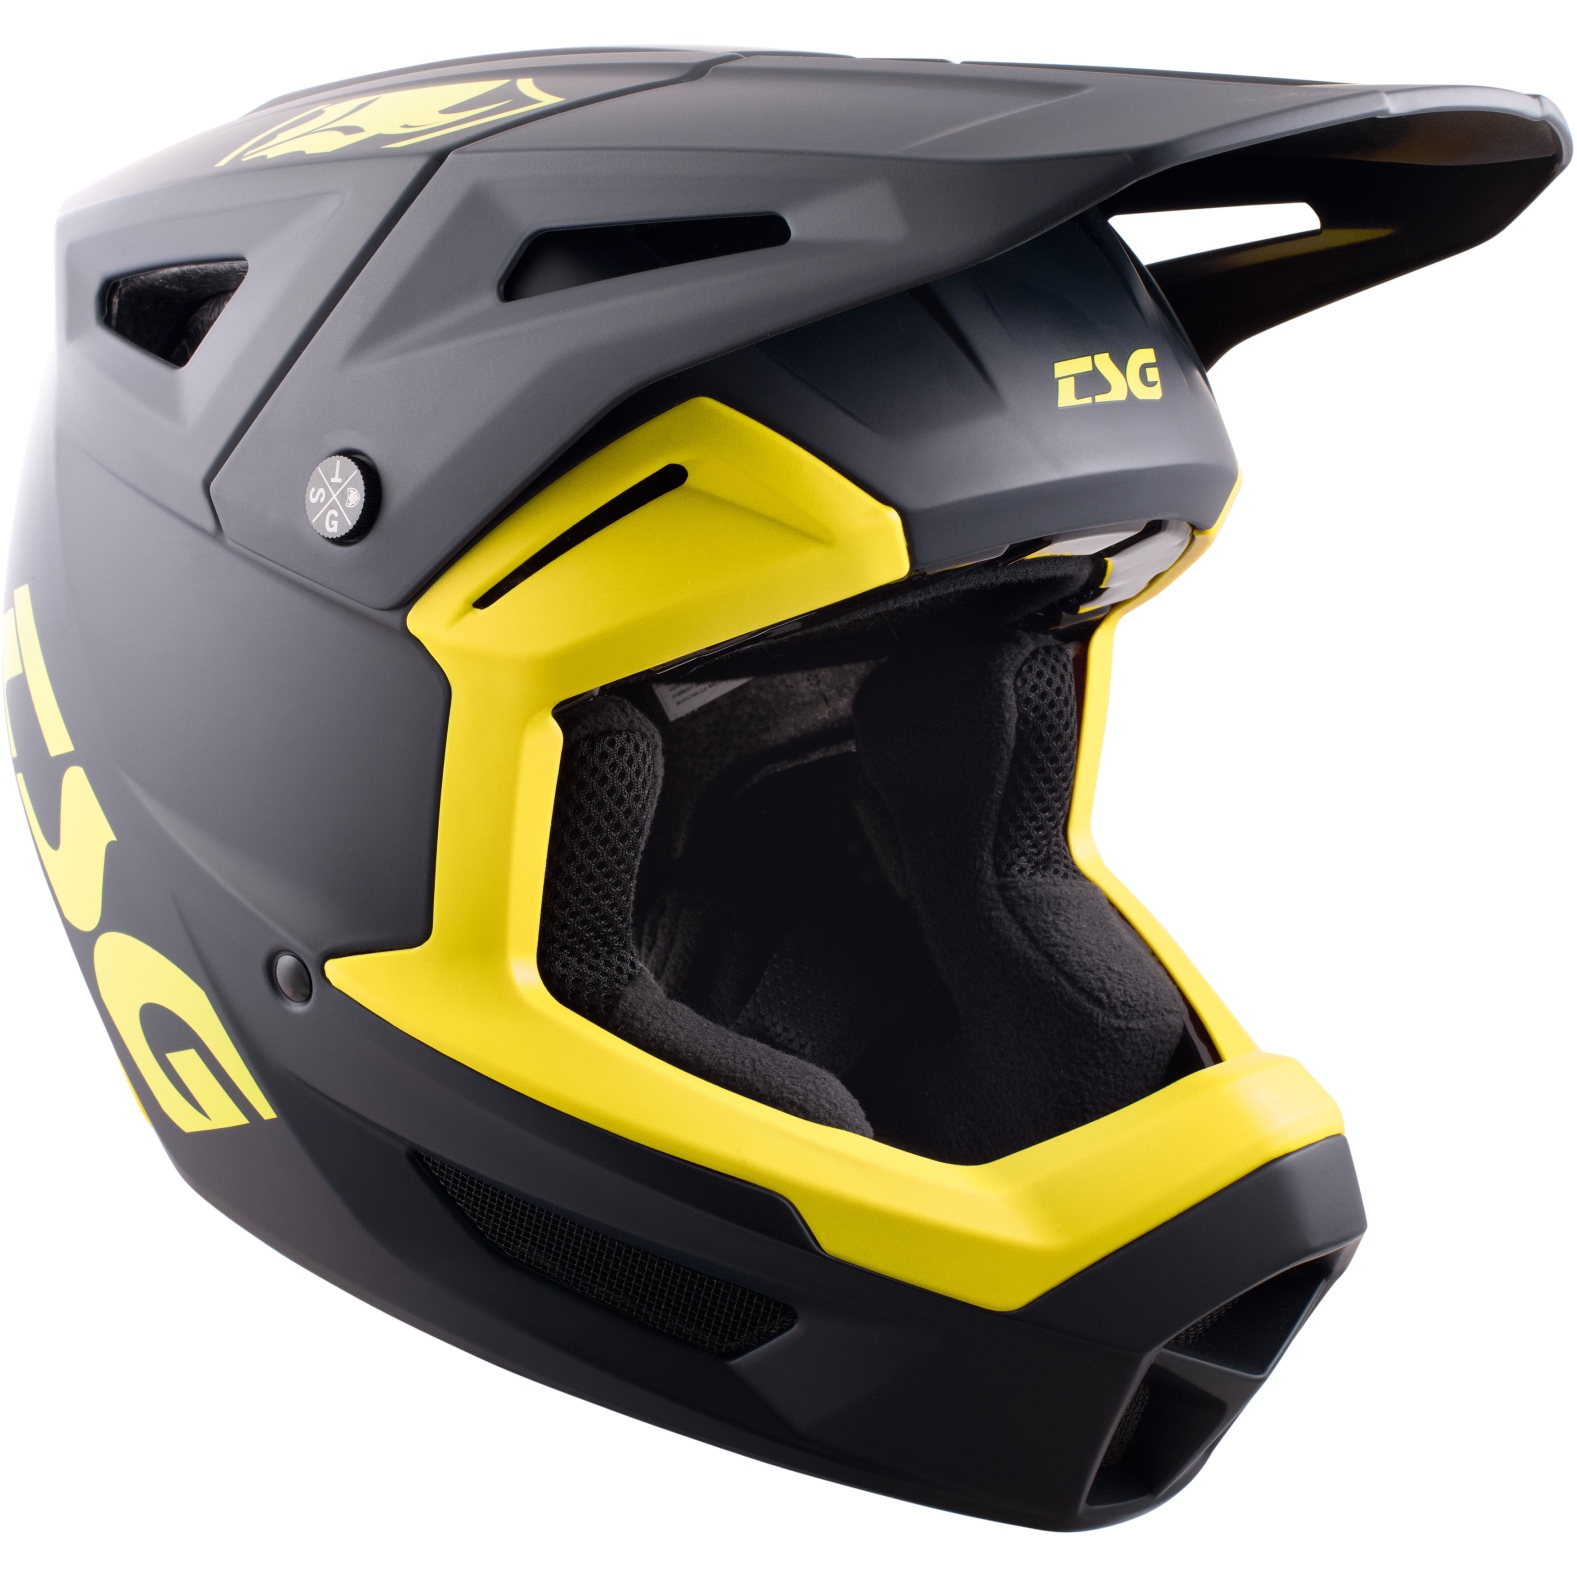 Produktbild von TSG Sentinel Solid Color Helm - satin blue yellow